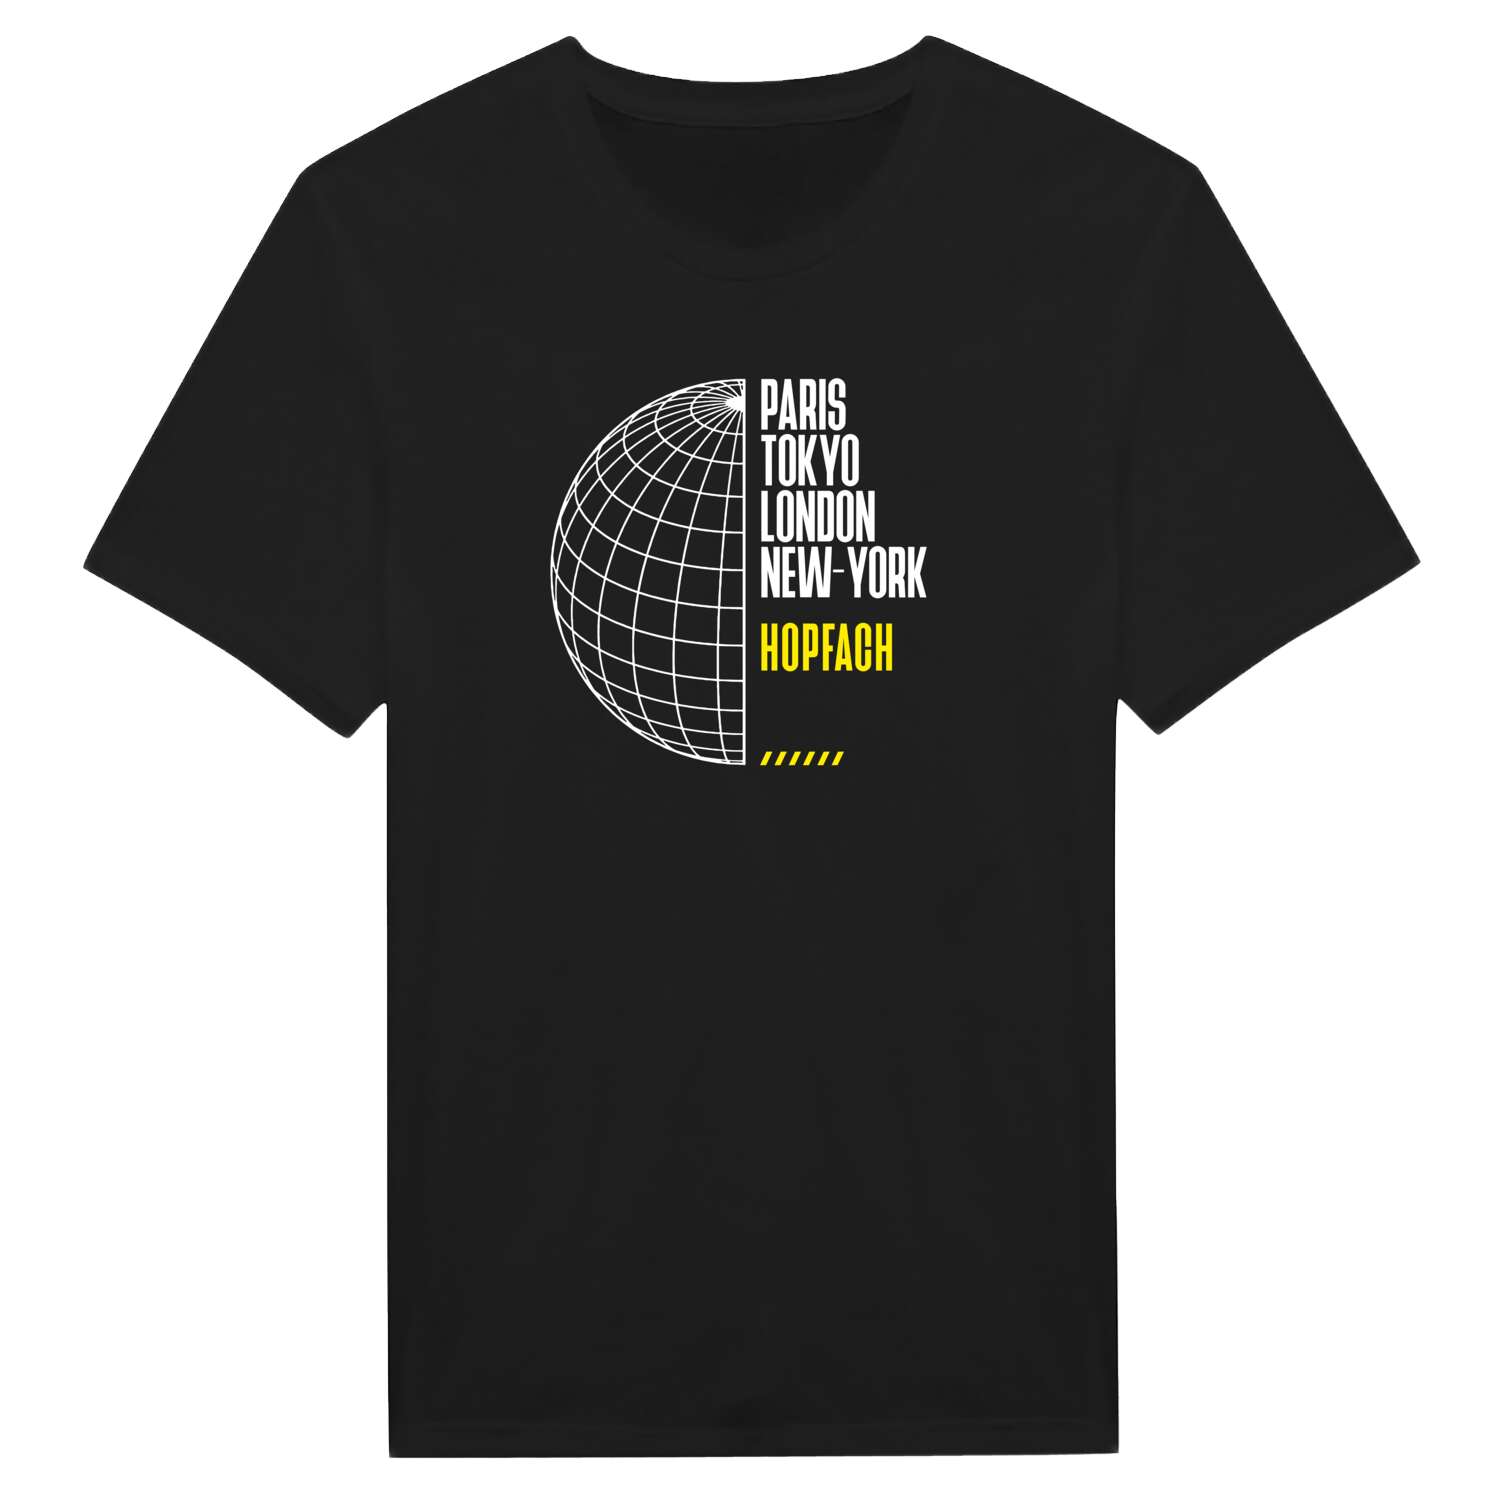 Hopfach T-Shirt »Paris Tokyo London«